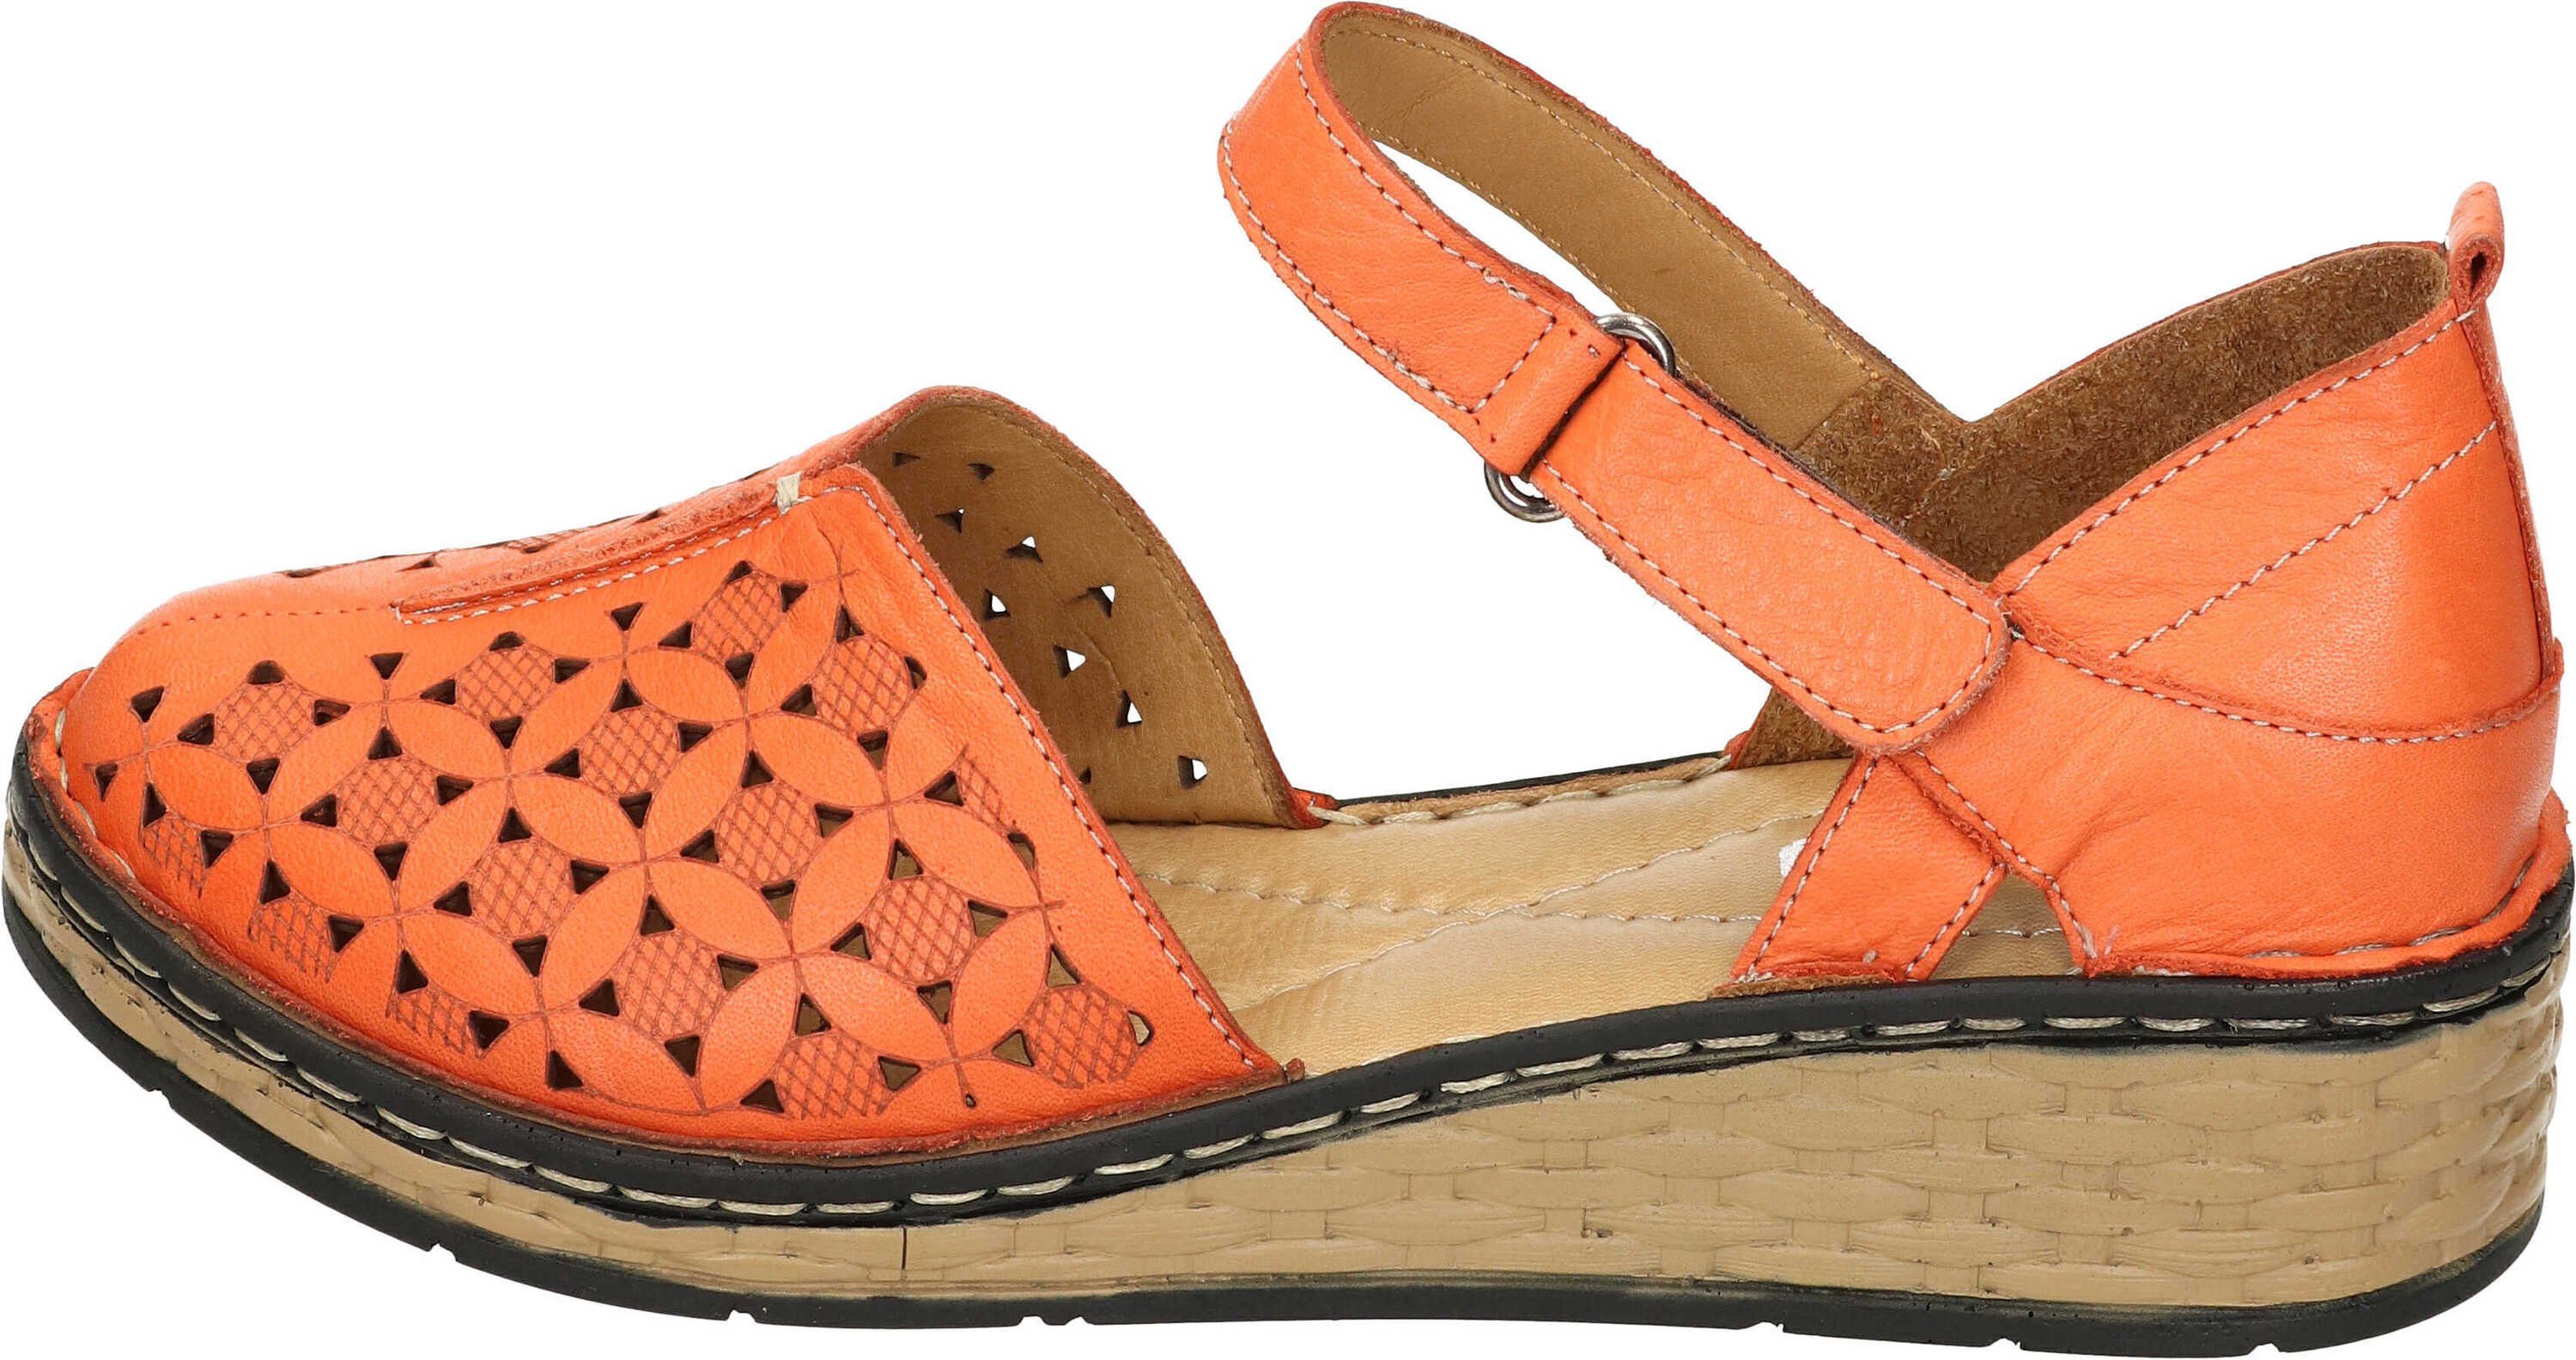 Manitu echtem Sandaletten Leder orange Sandalette aus